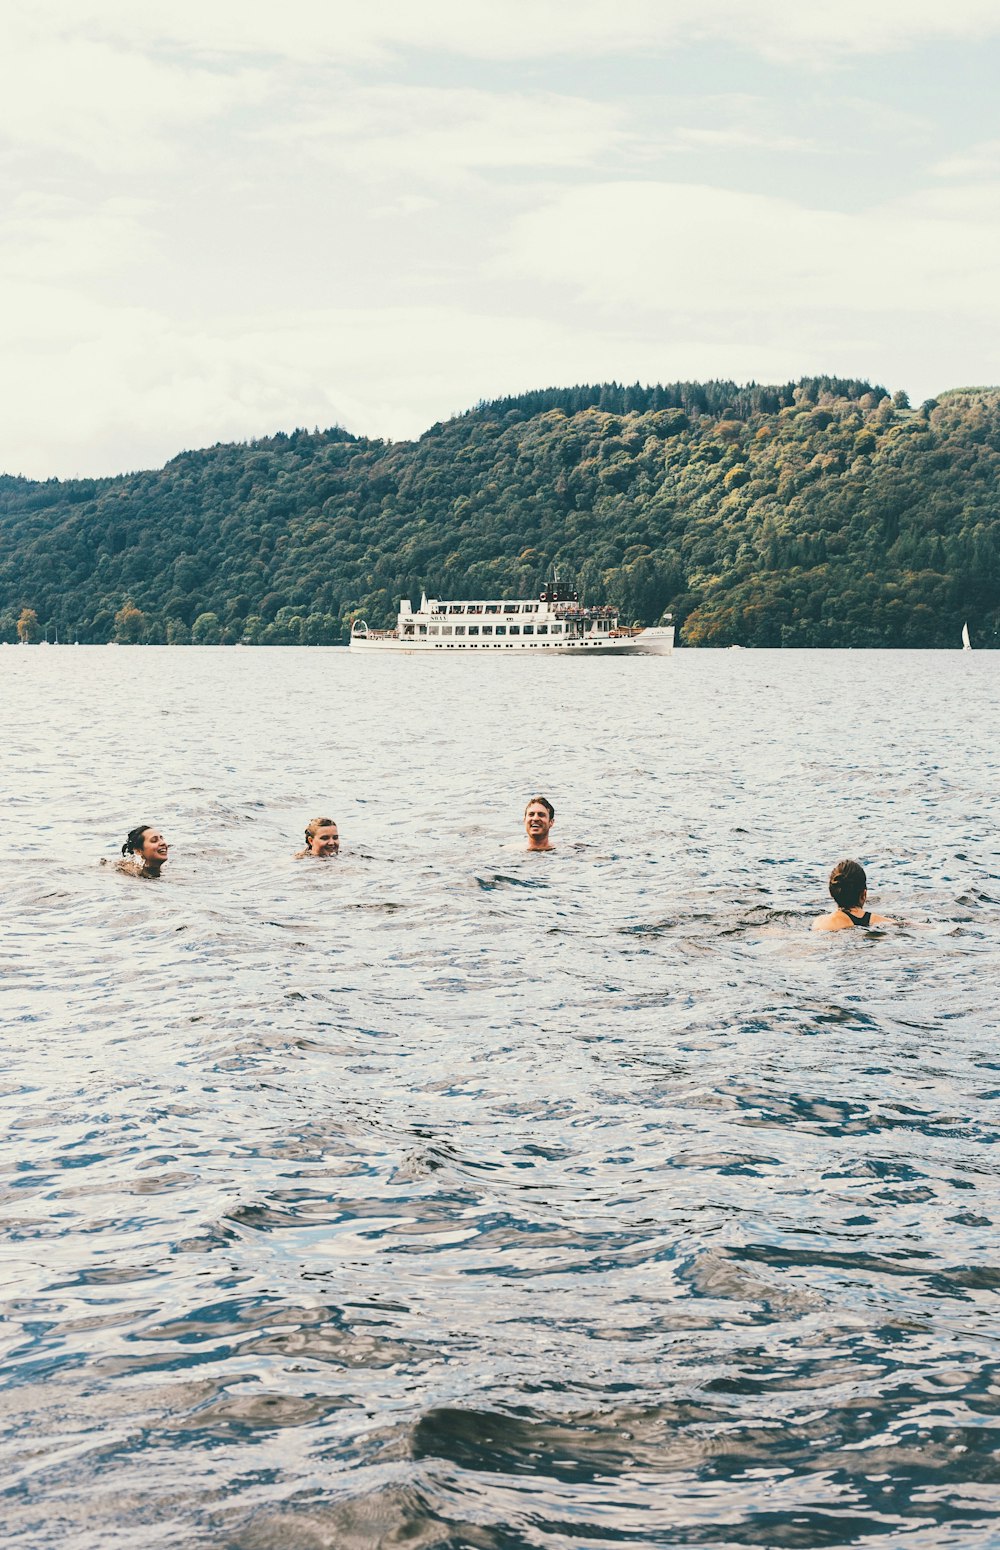 quatro pessoas nadando no corpo d'água